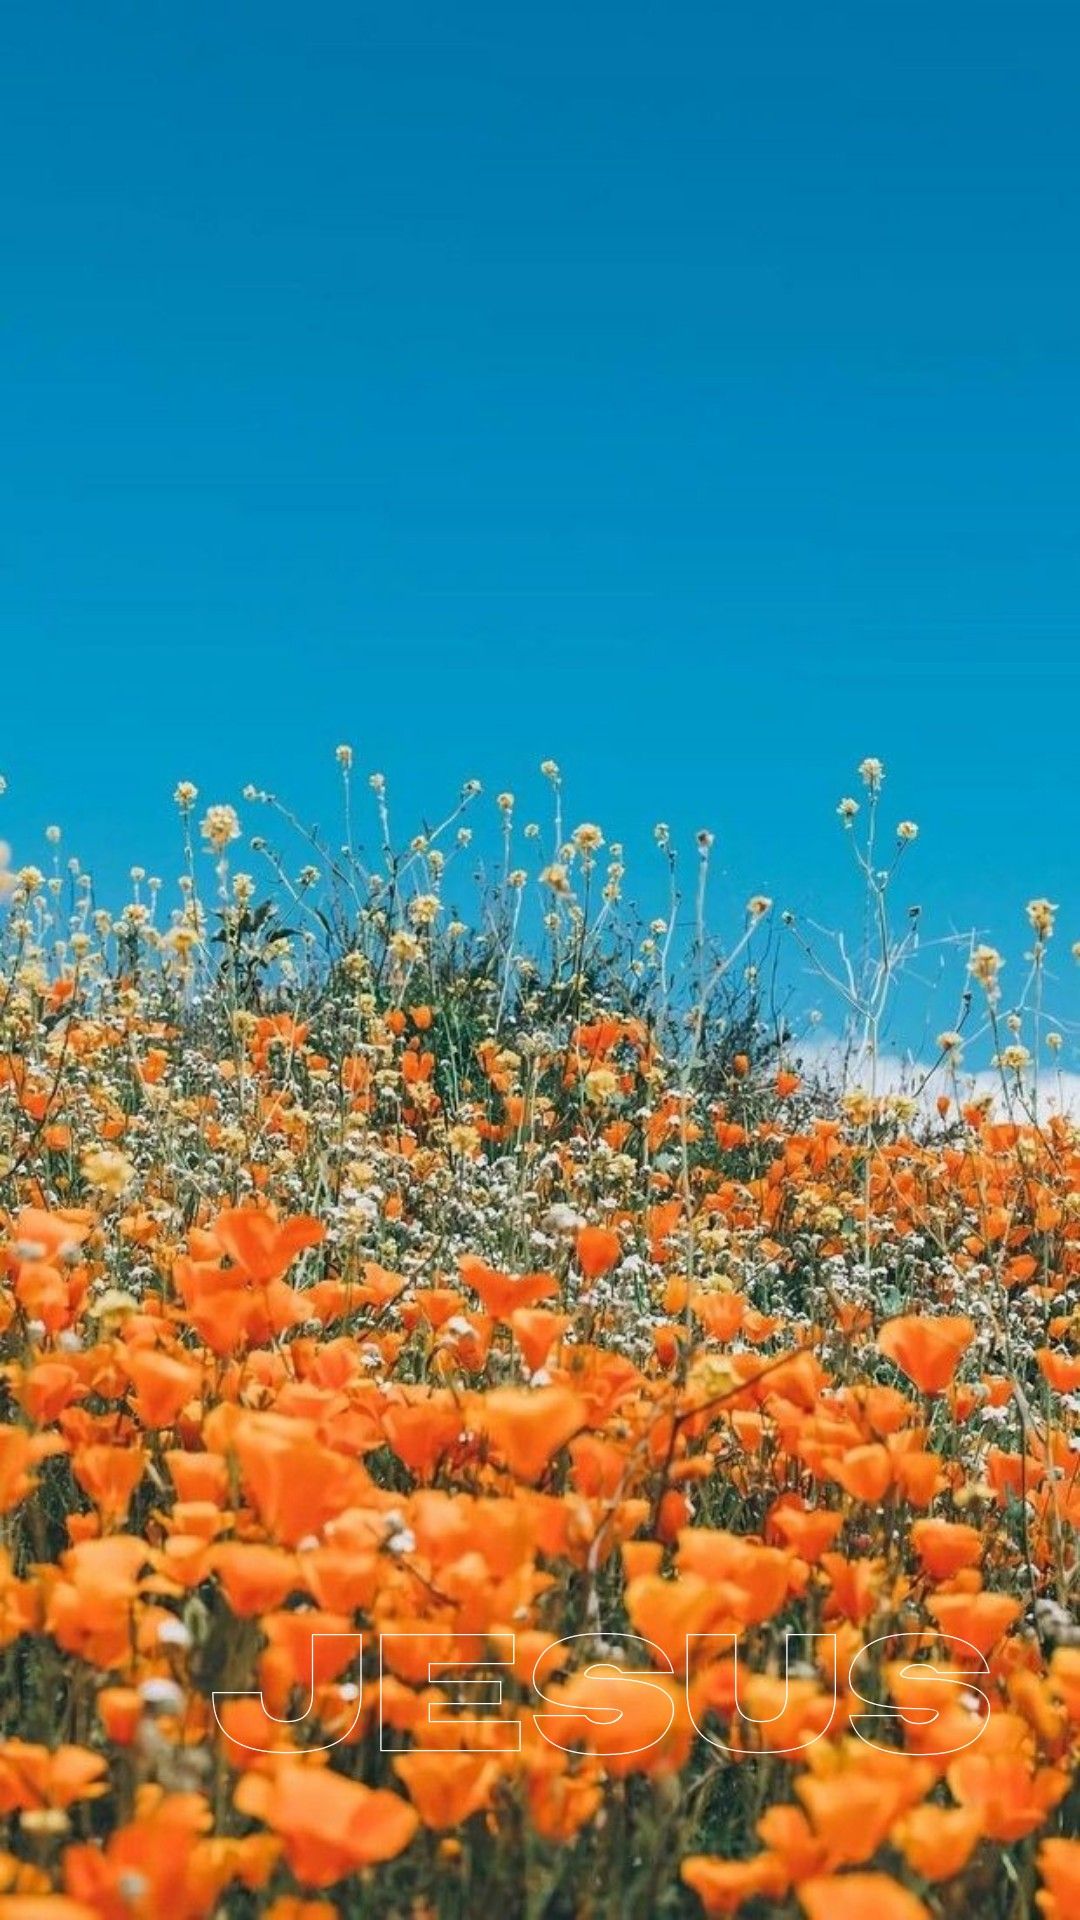 A field of orange flowers under a blue sky - Flower